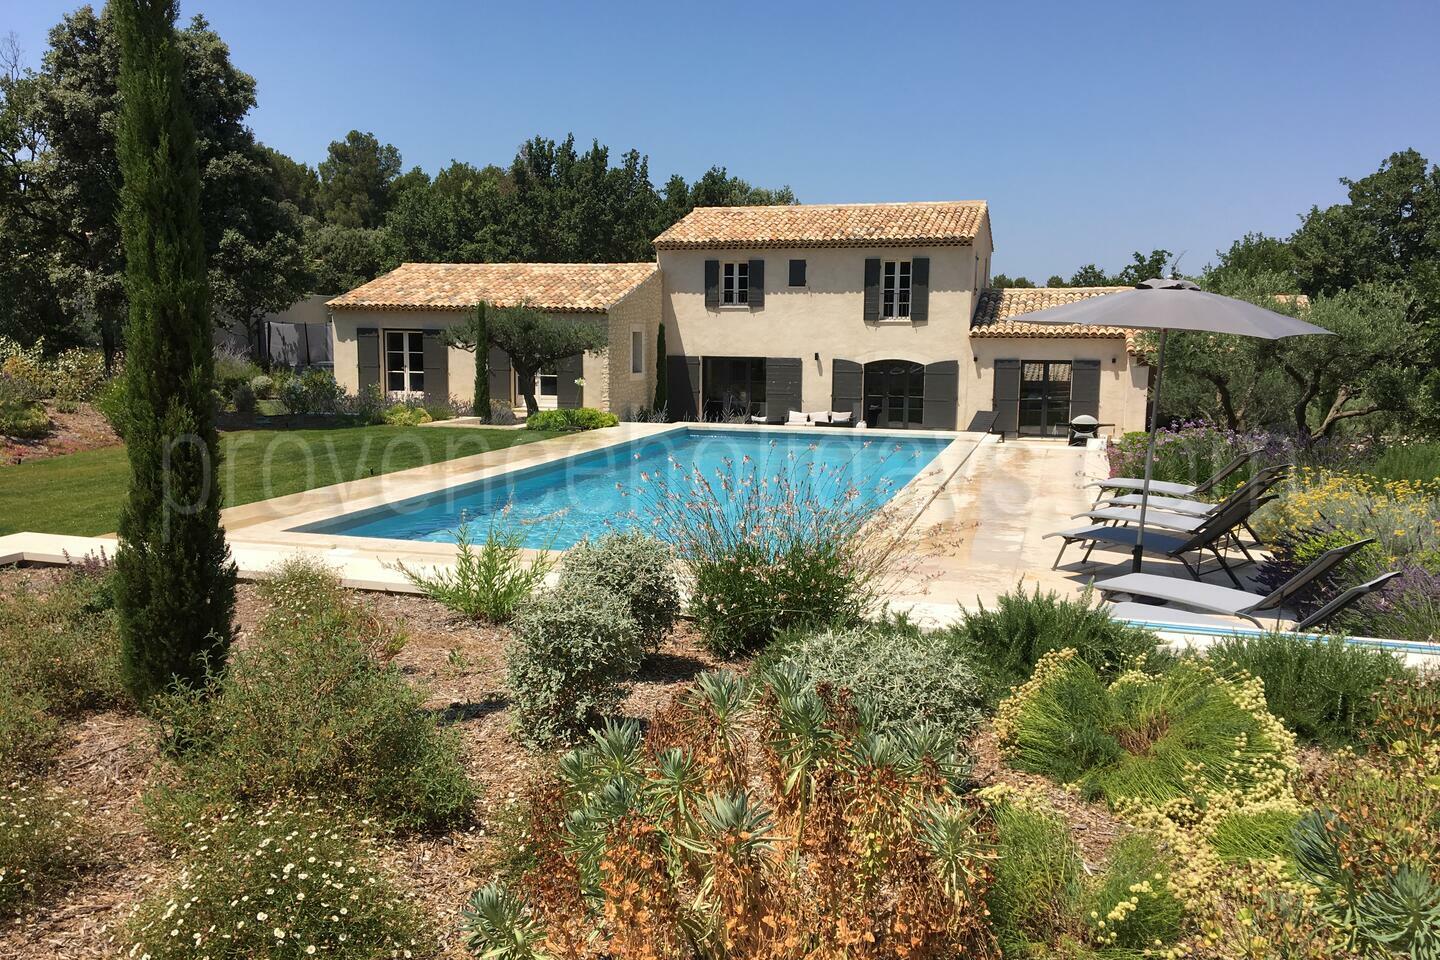 Location de vacances récemment restaurée à 1 km d'Eyragues 1 - Le Mas Provençal: Villa: Pool